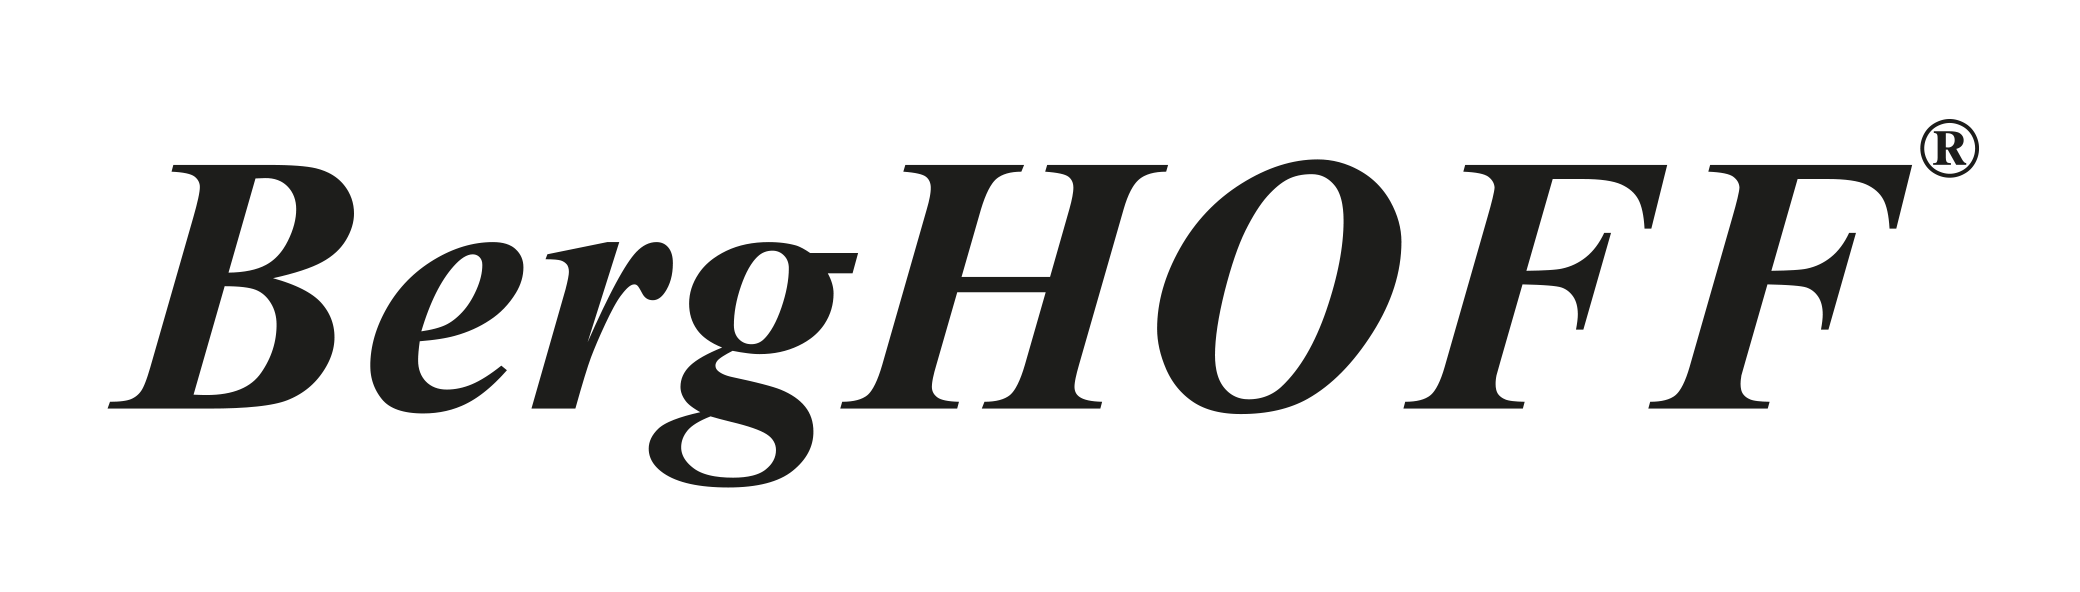 Cozino - Berghoff logo